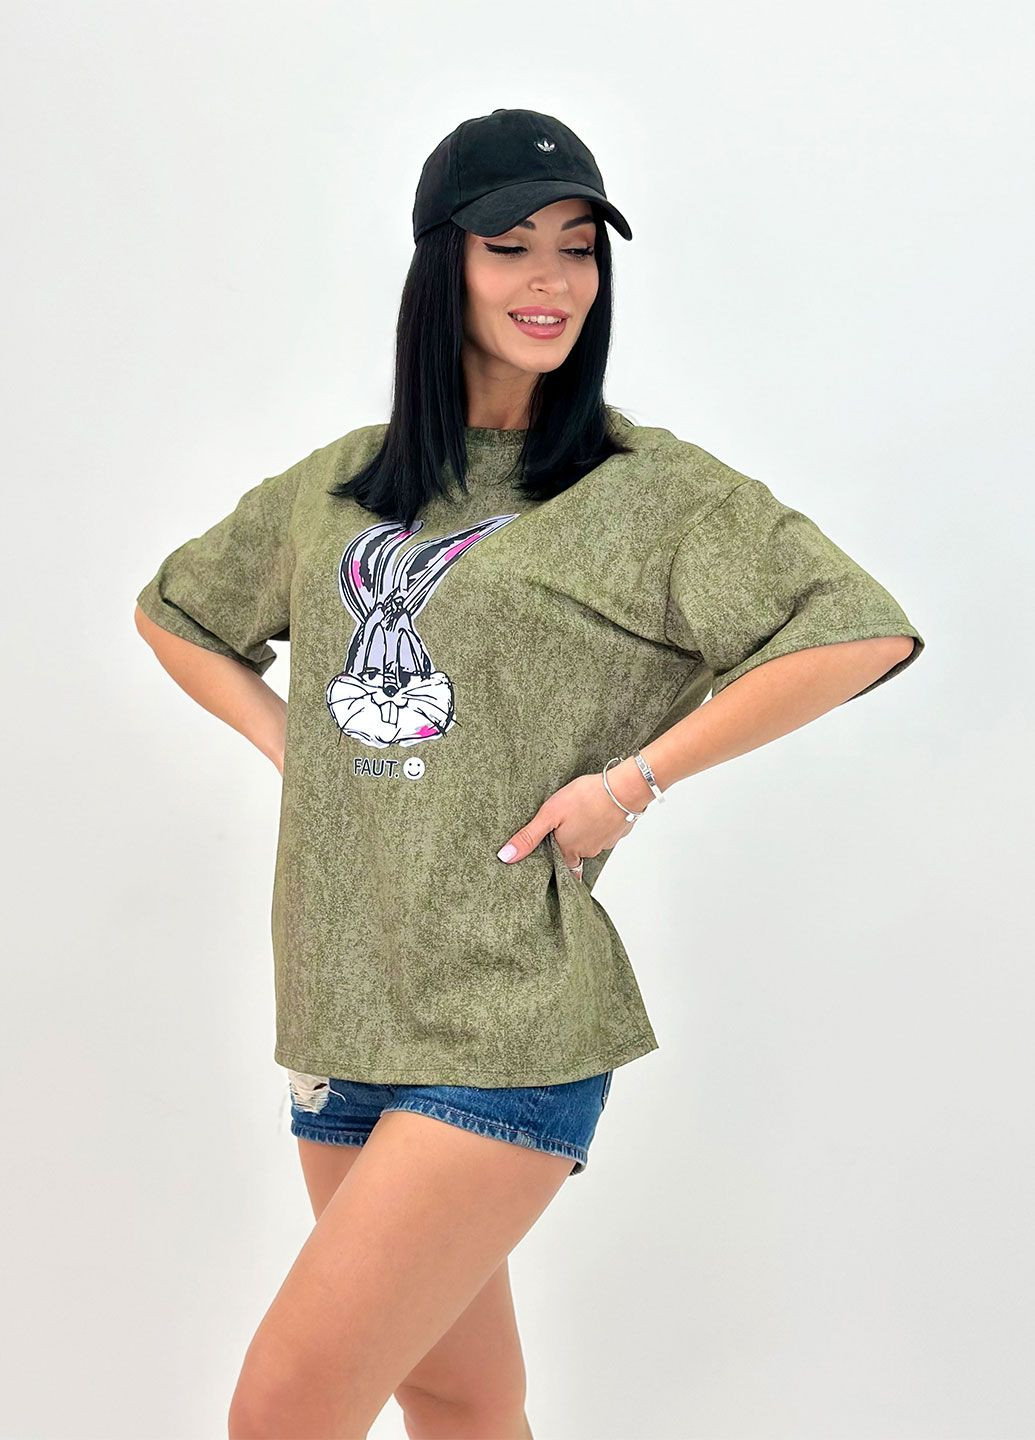 Хаки (оливковая) летняя летняя женская футболка с коротким рукавом Fashion Girl Roger